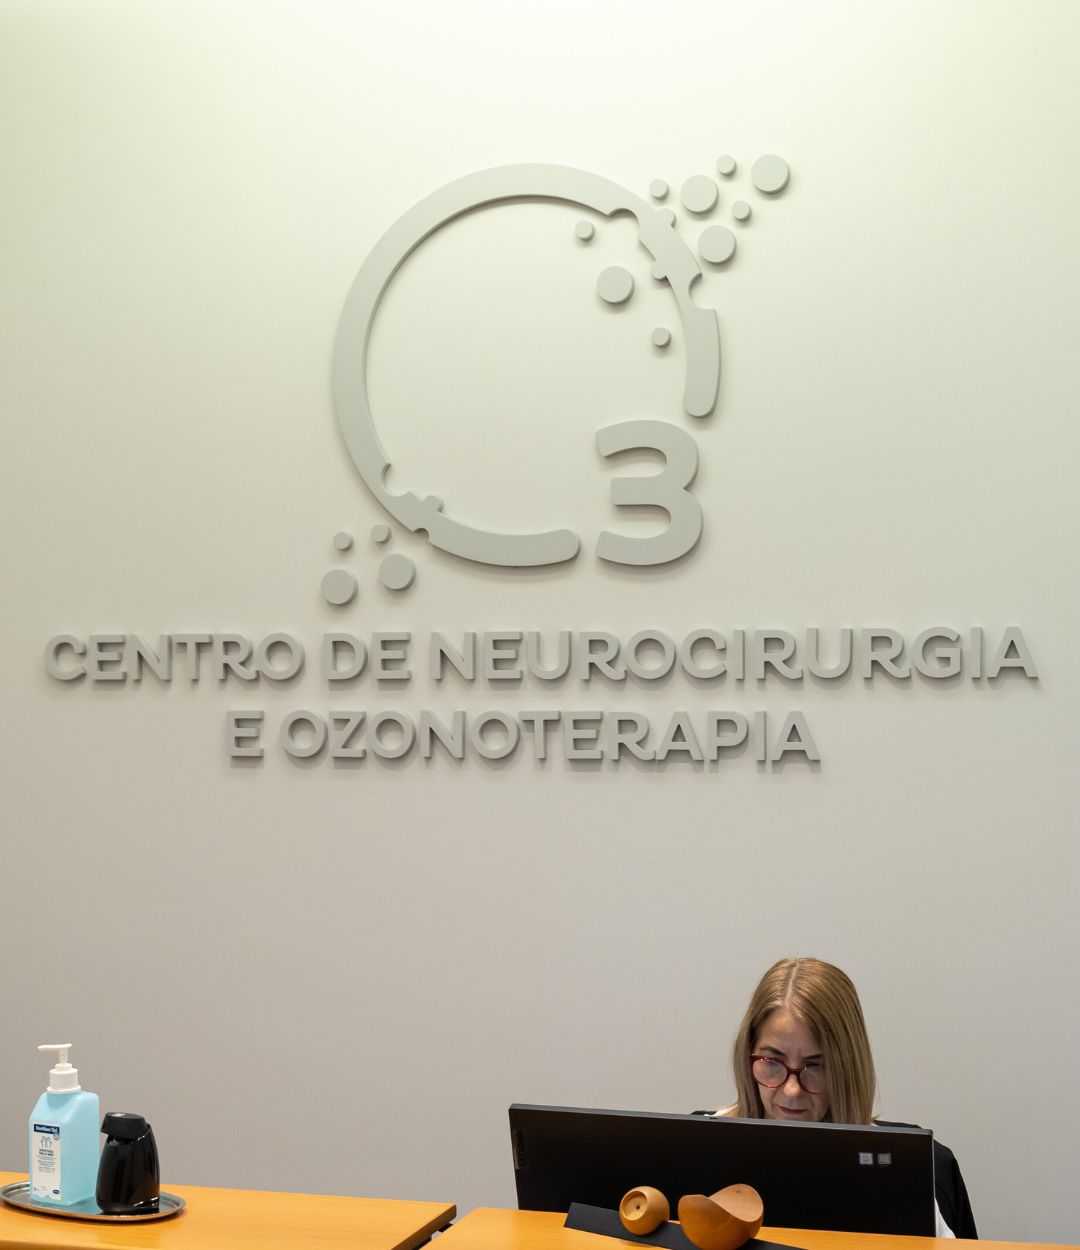 sobre centro de neurocirurgia e ozonoterapia cno3 dr alfredo calheiros (1)